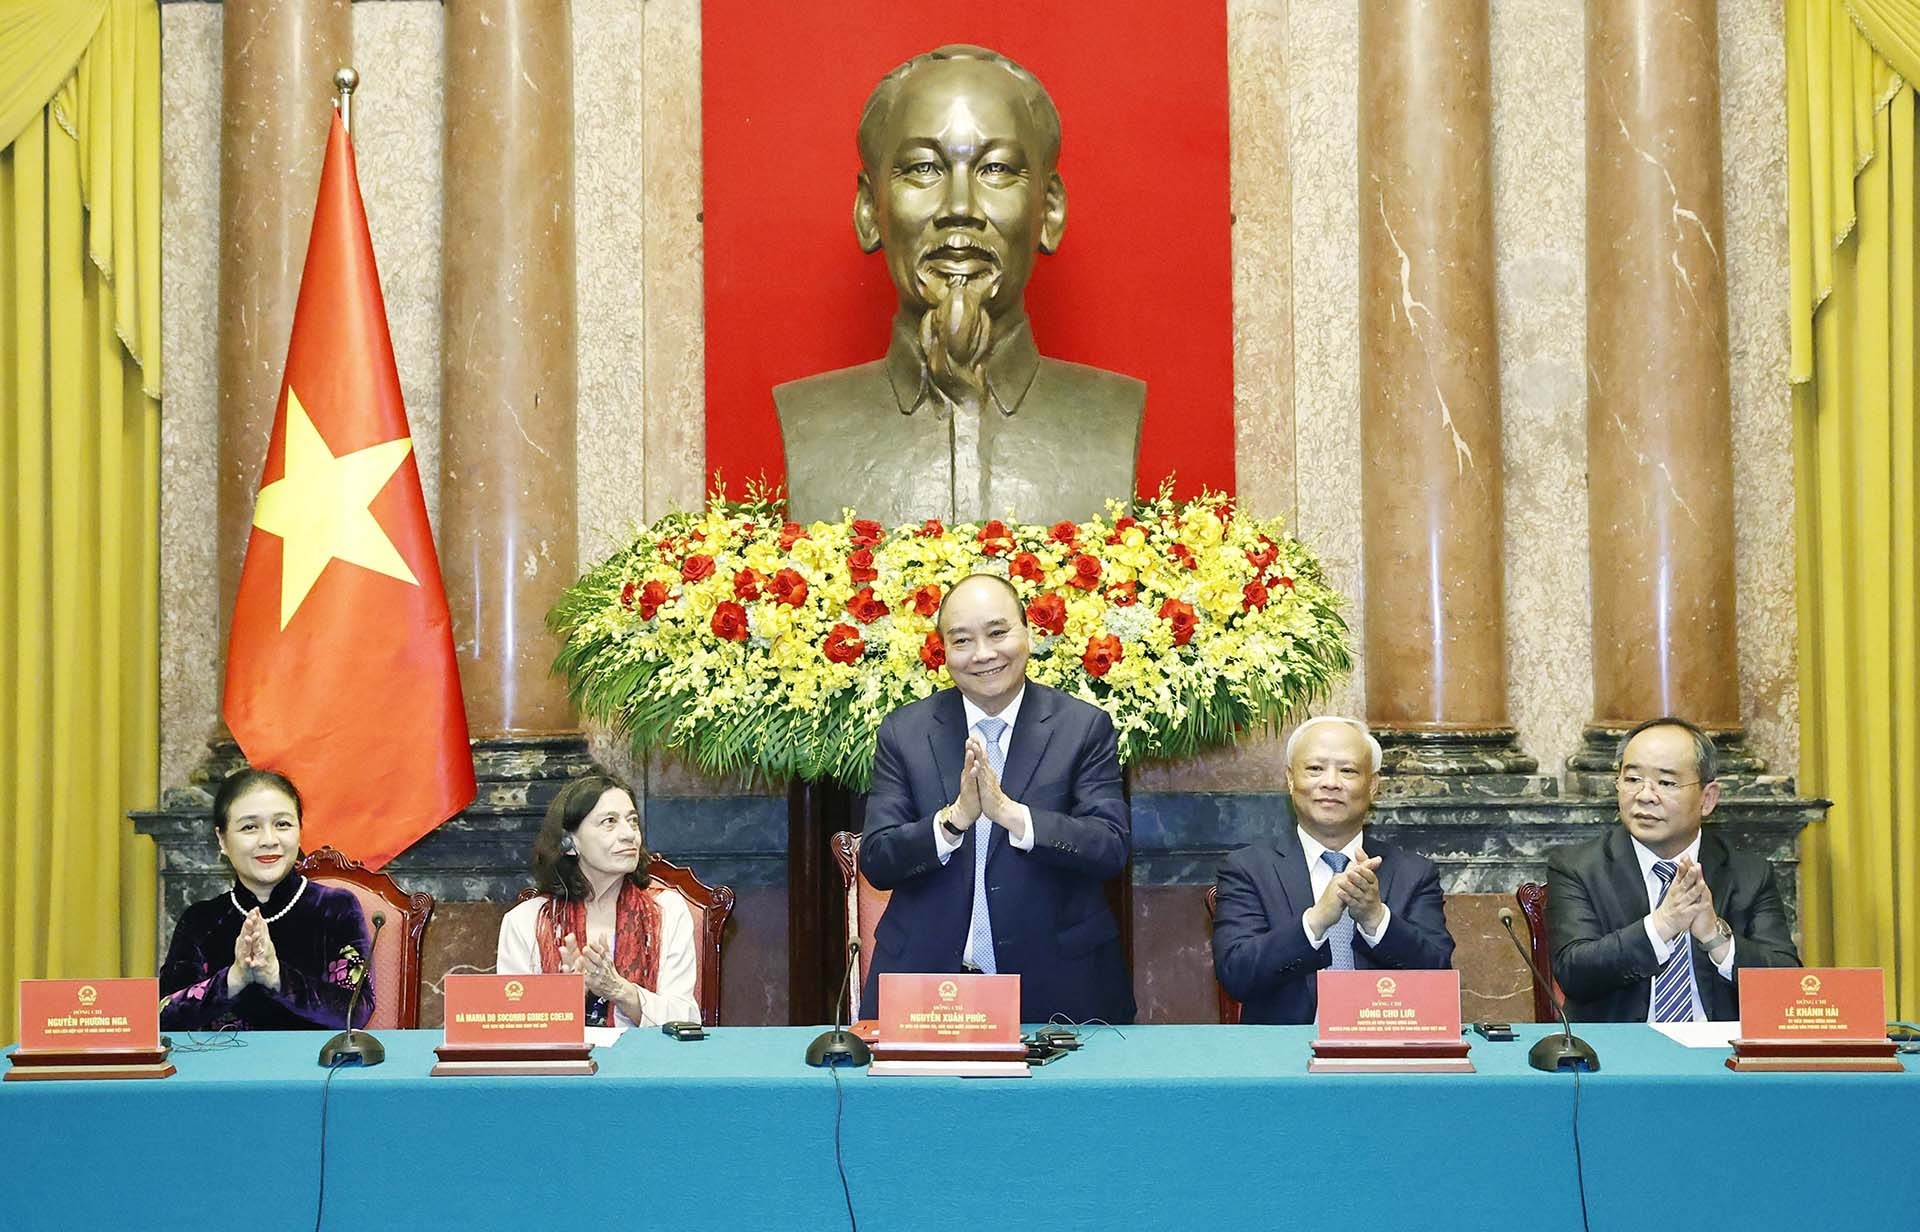 Việt Nam sẽ tiếp tục đóng góp tích cực vào các phong trào của Hội đồng Hòa bình thế giới